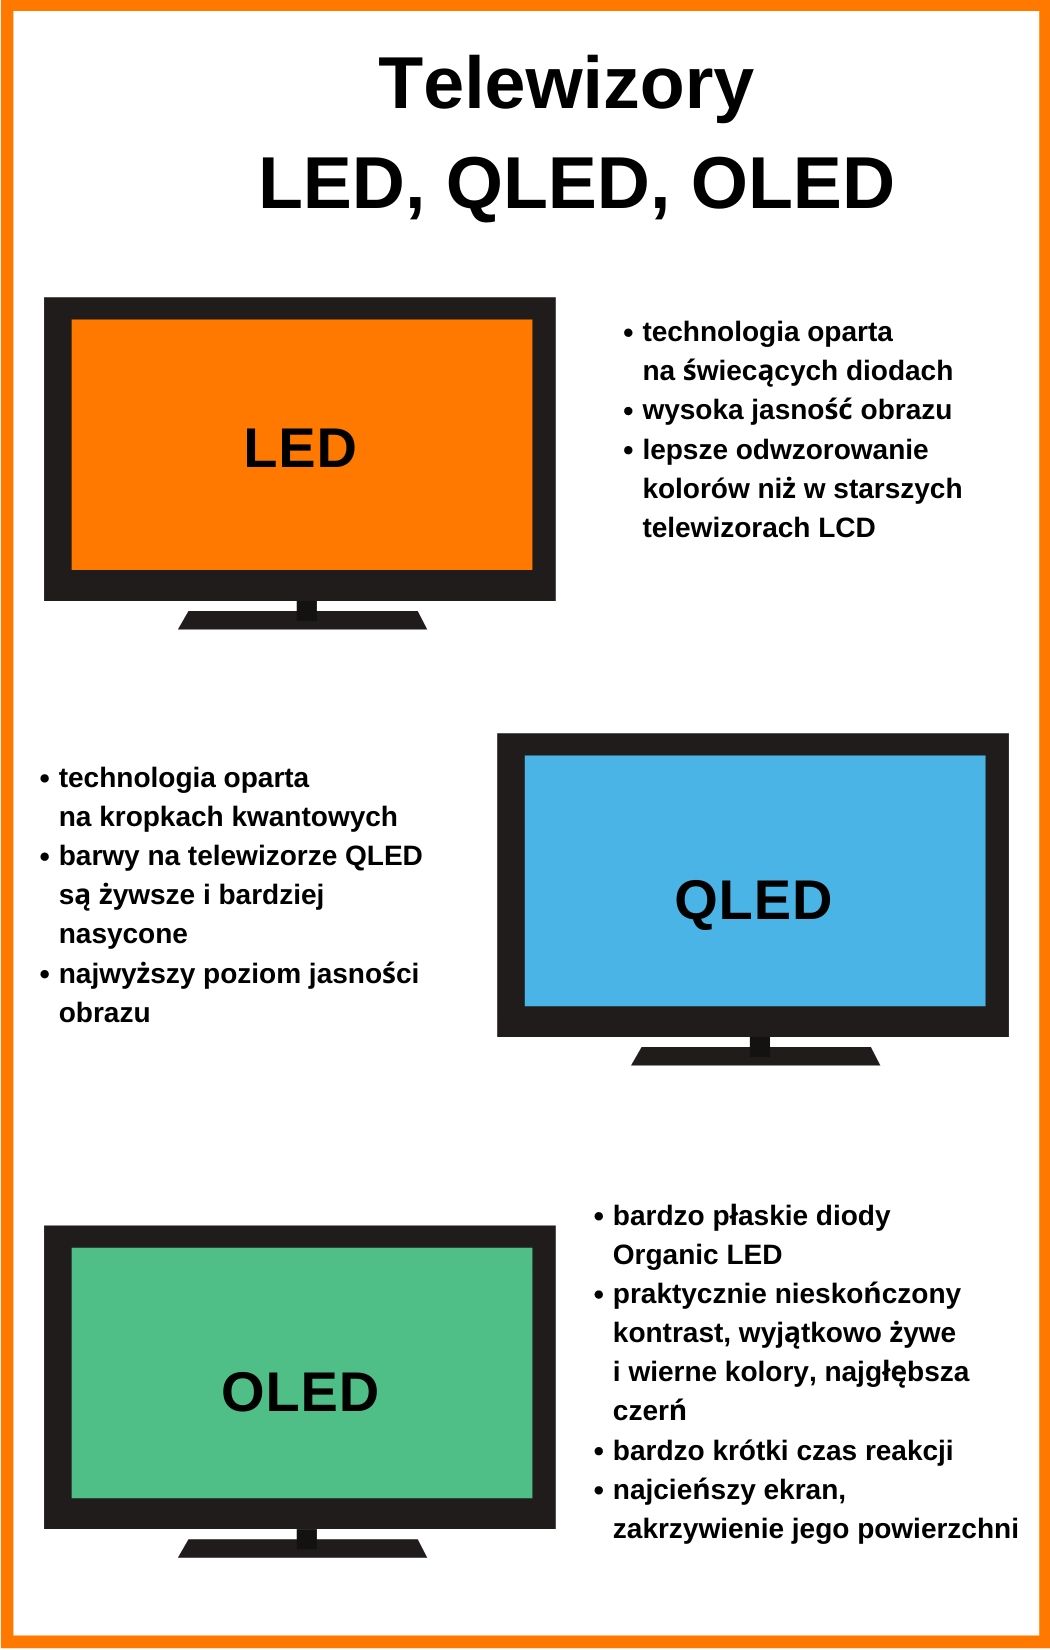 Co to jest LED w telewizorach?